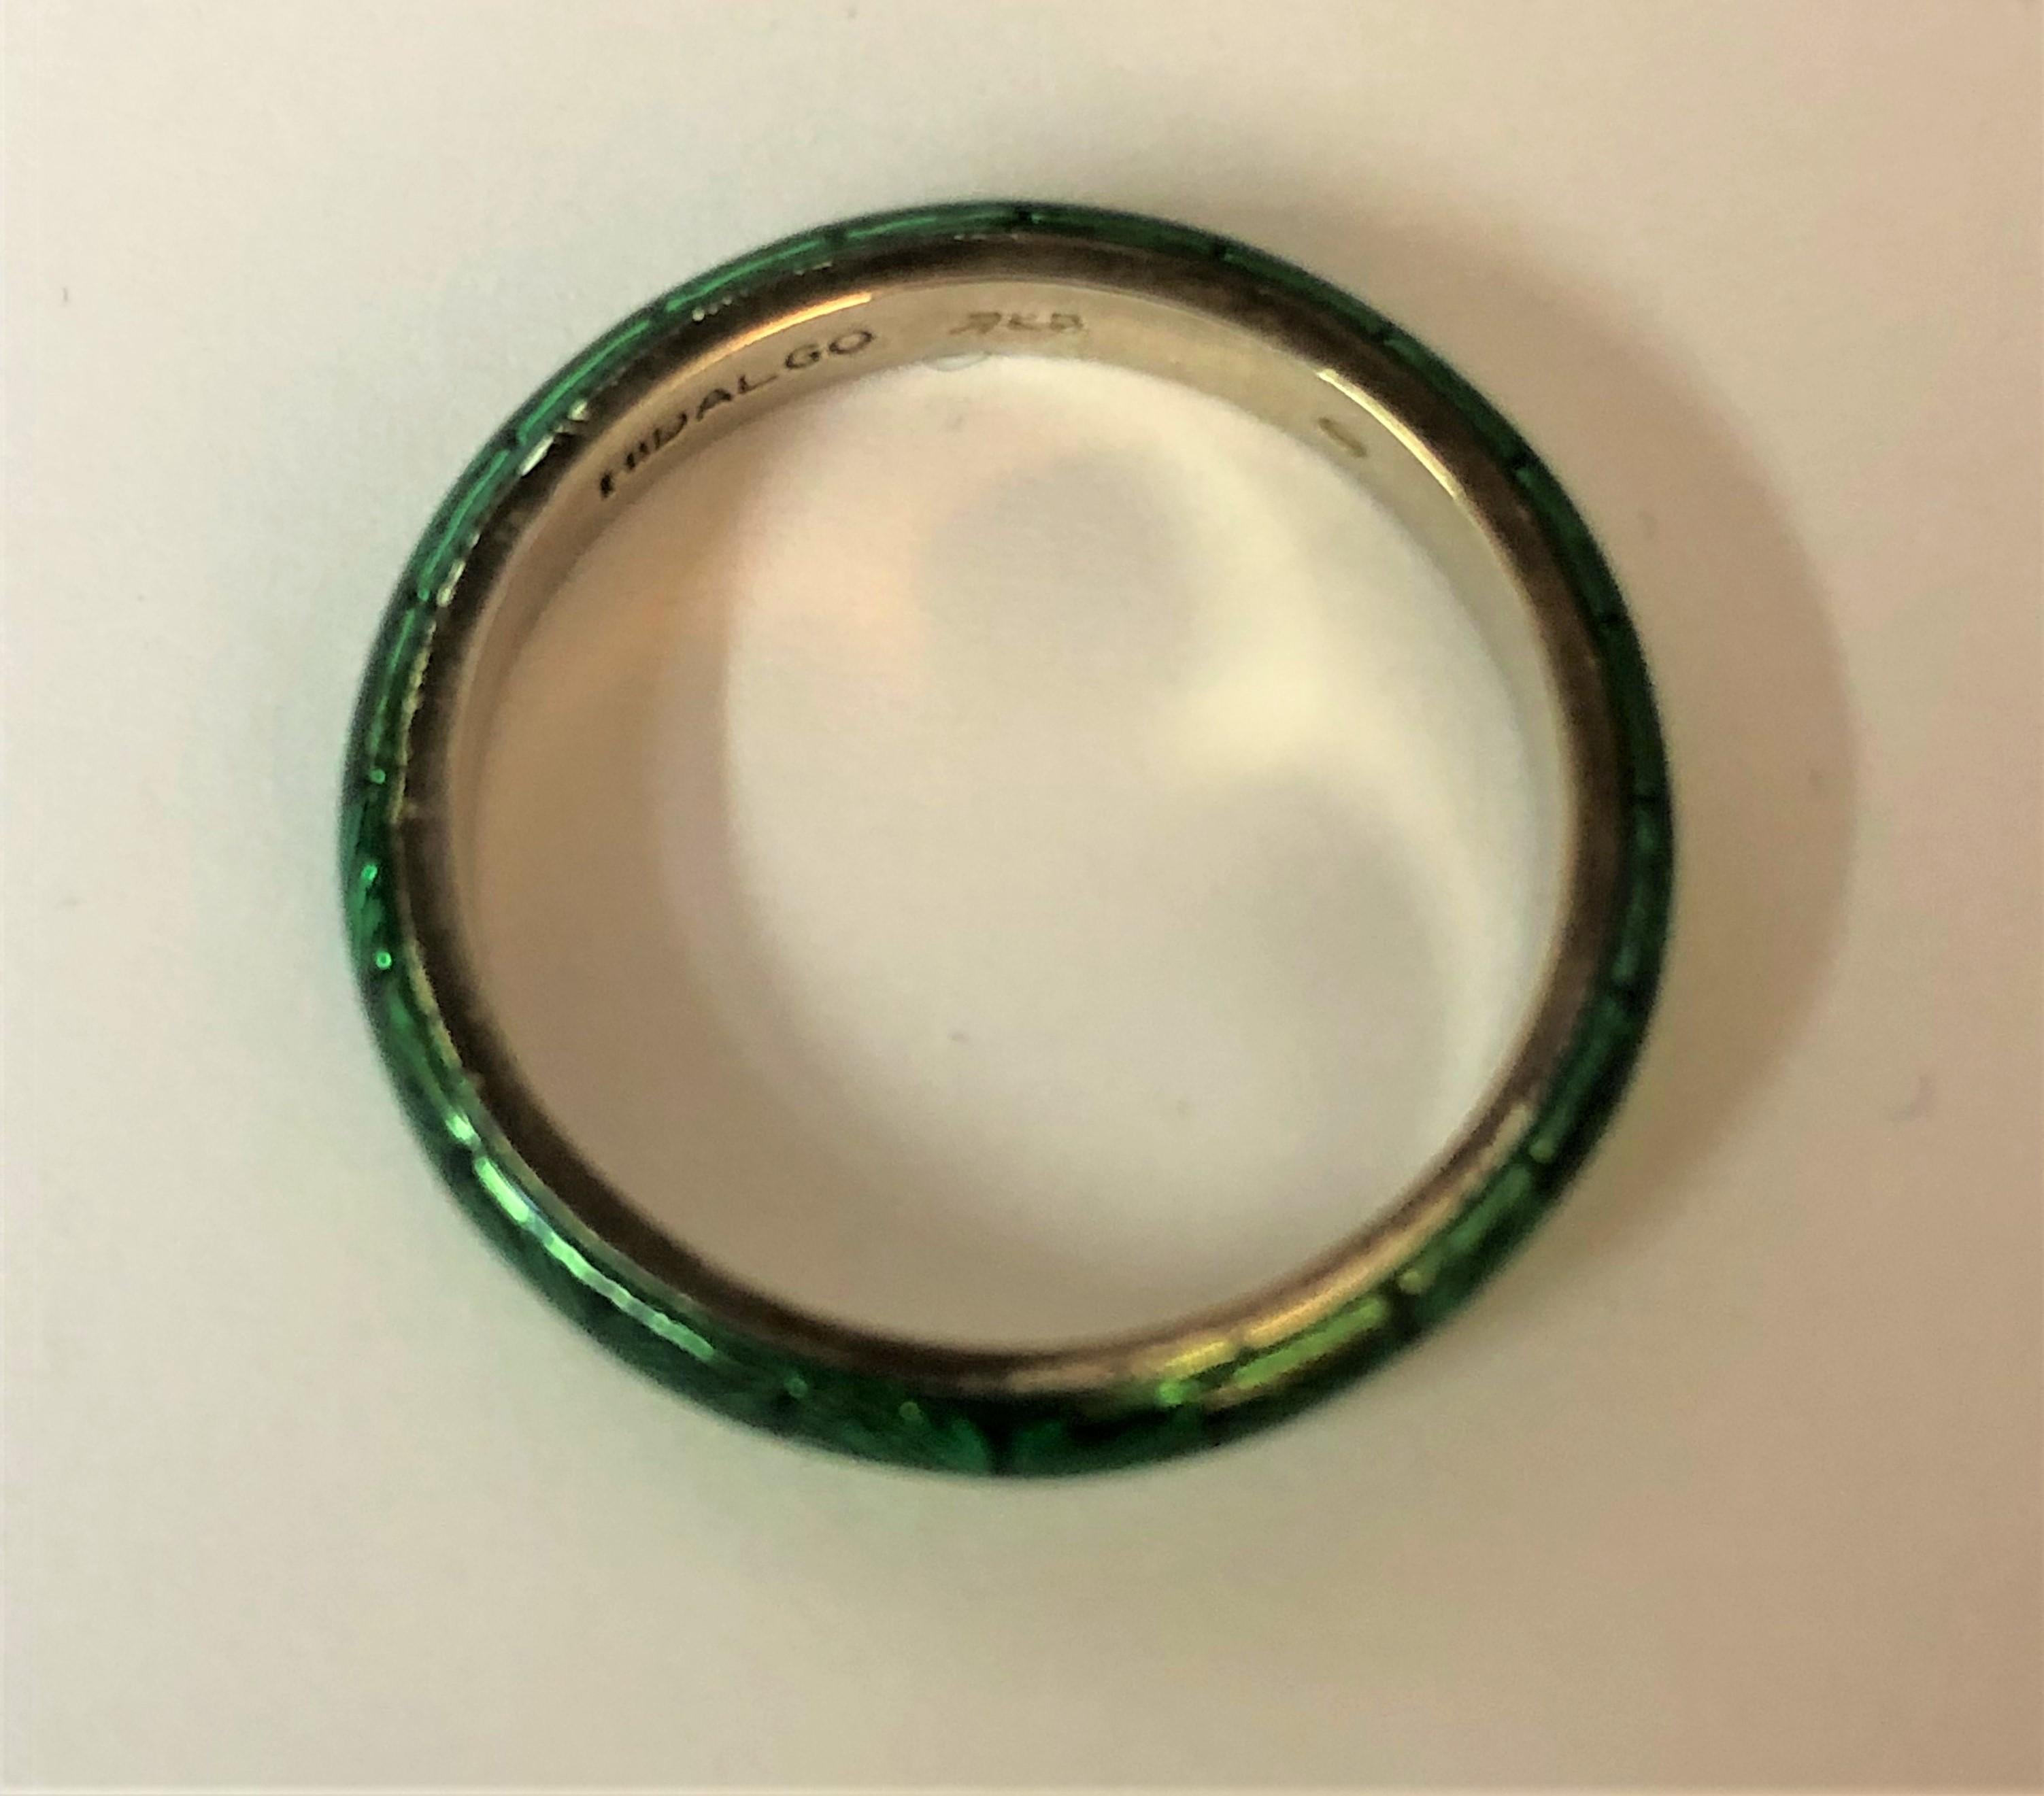 Von Designer Hidalgo 
Ein grüner Emaille-Ring aus Sterlingsilber, ca. 3 mm breit.  
Gestempelt 